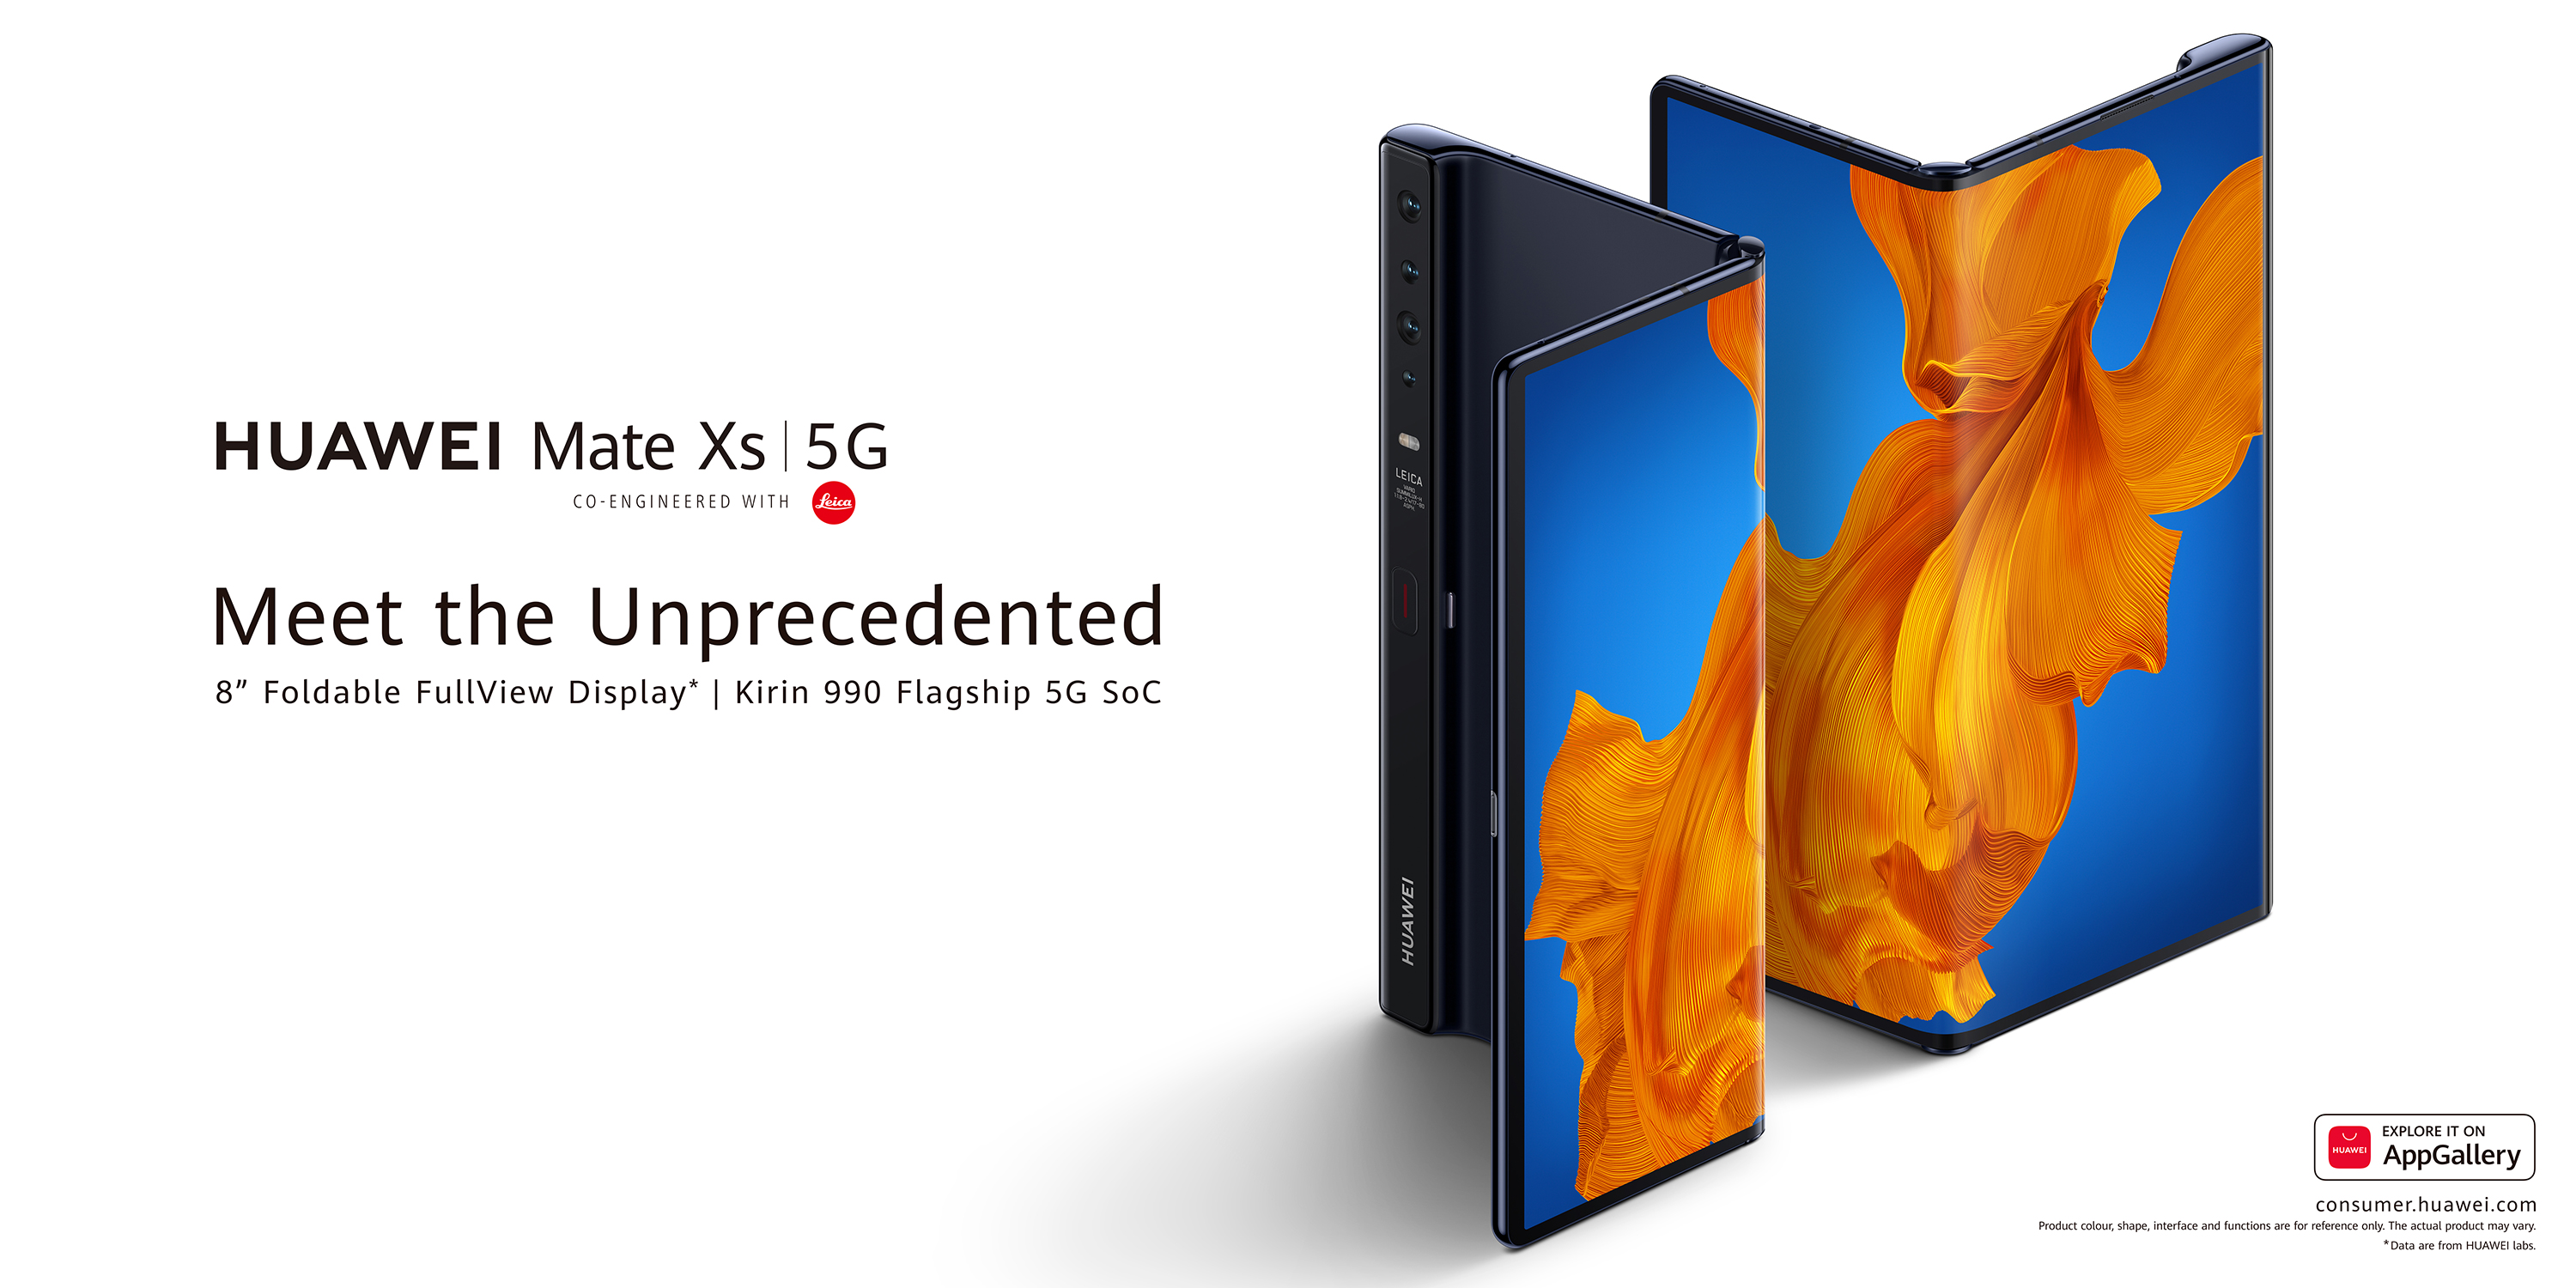 Nagyobb, gyorsabb, drágább és ugyanúgy hajlik: Itt a Huawei Mate Xs 5G!